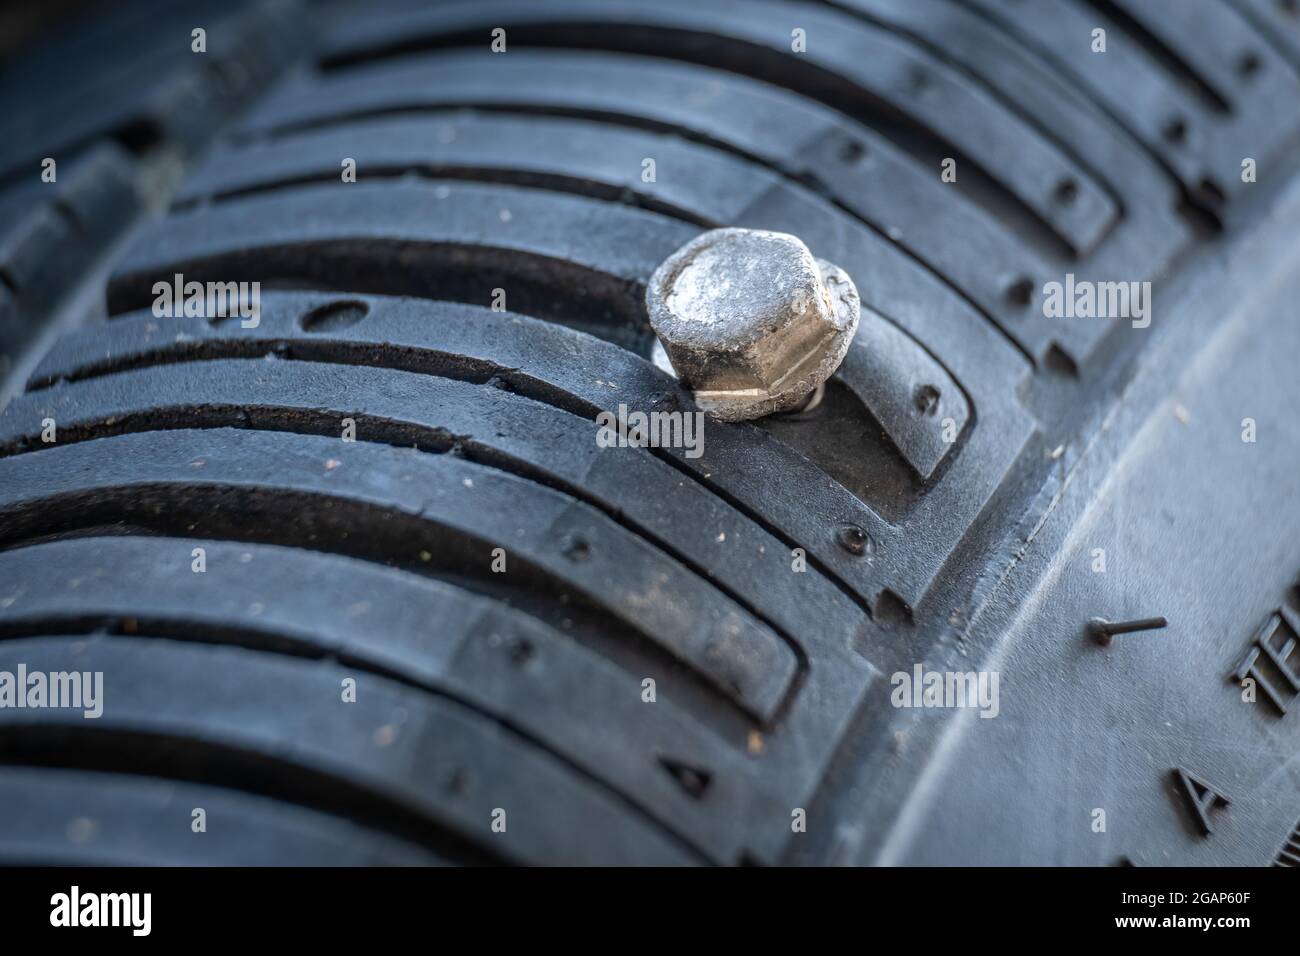 Une vis a percé un pneu de voiture au bord de la bande de roulement près du  flanc, rendant le pneu irréparable Photo Stock - Alamy